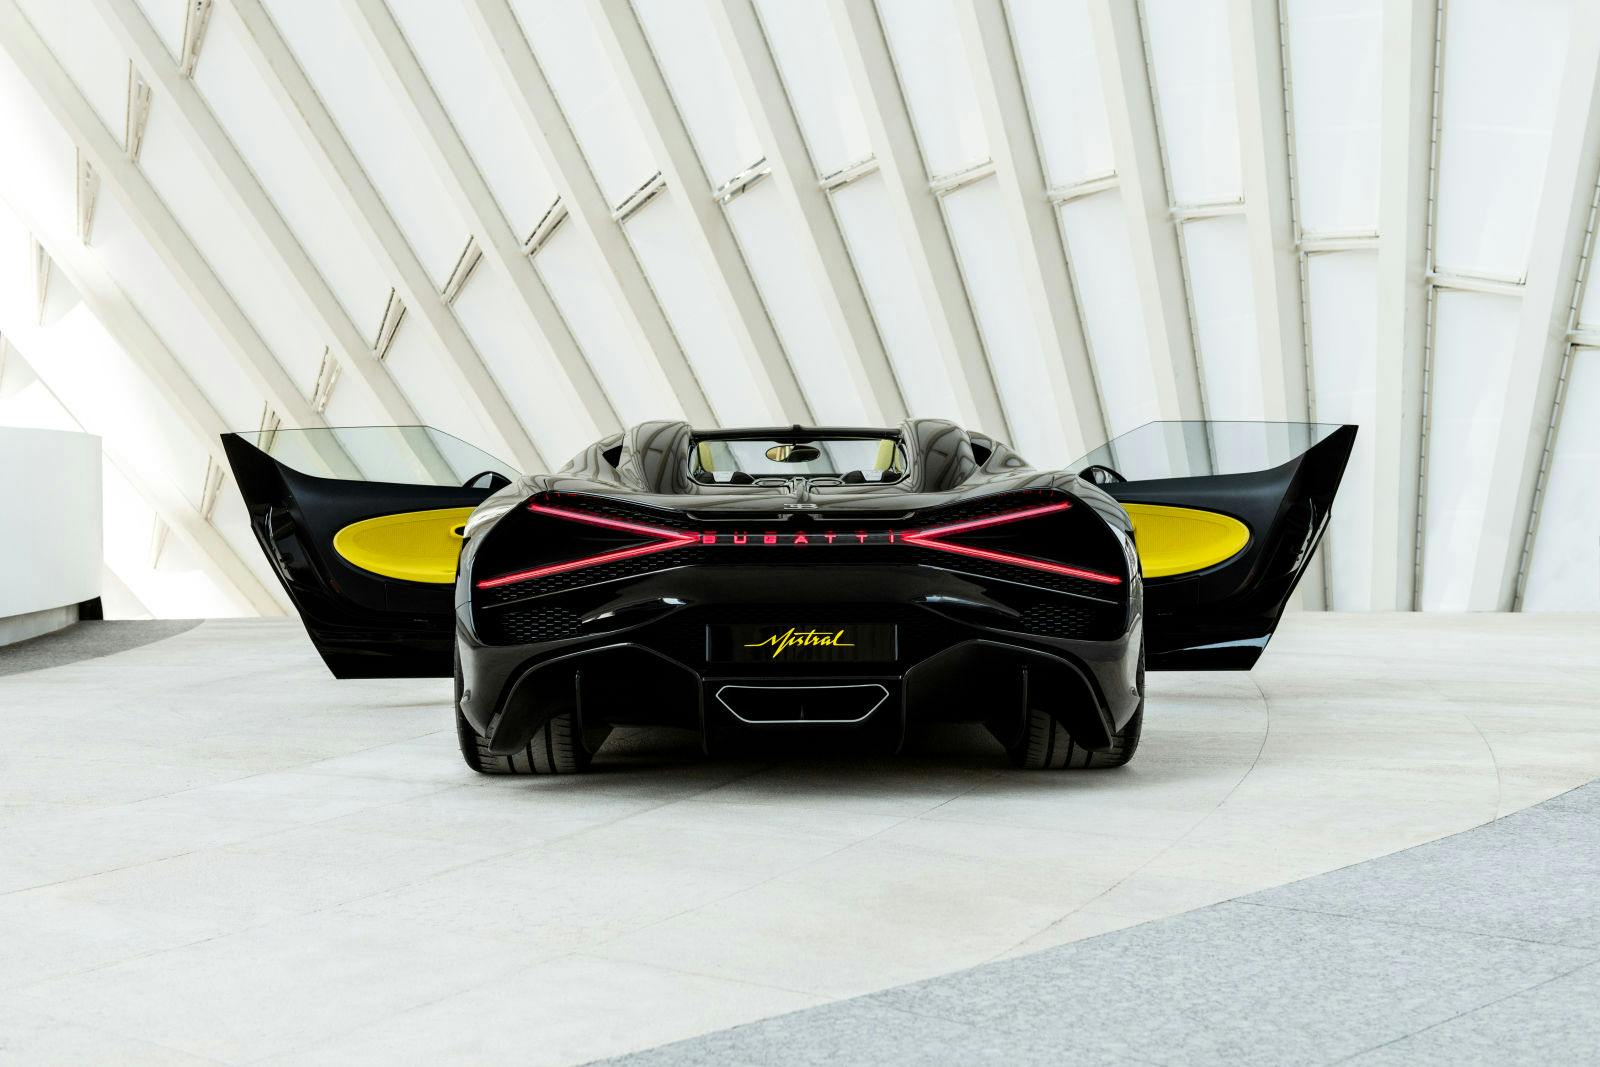 Die erste Station des Bugatti W16 Mistral auf seiner Tour durch  Saudi-Arabien  war der King Abdullah Financial District.  